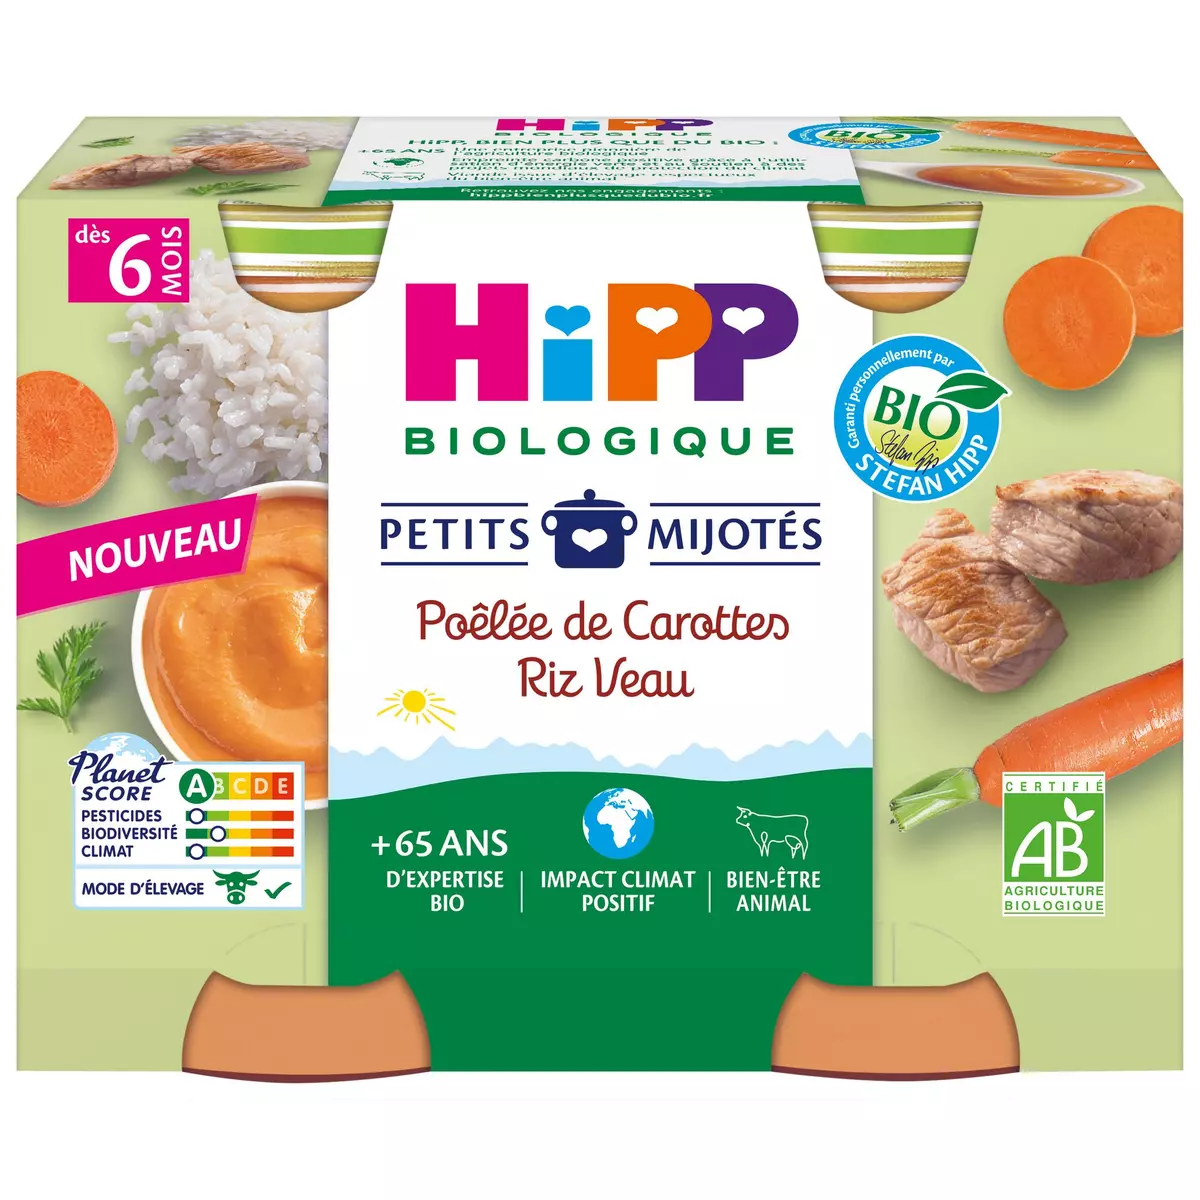 HIPP Petits mijotés petit pot poêlée de carottes riz veau bio dès 6 mois 2x190g